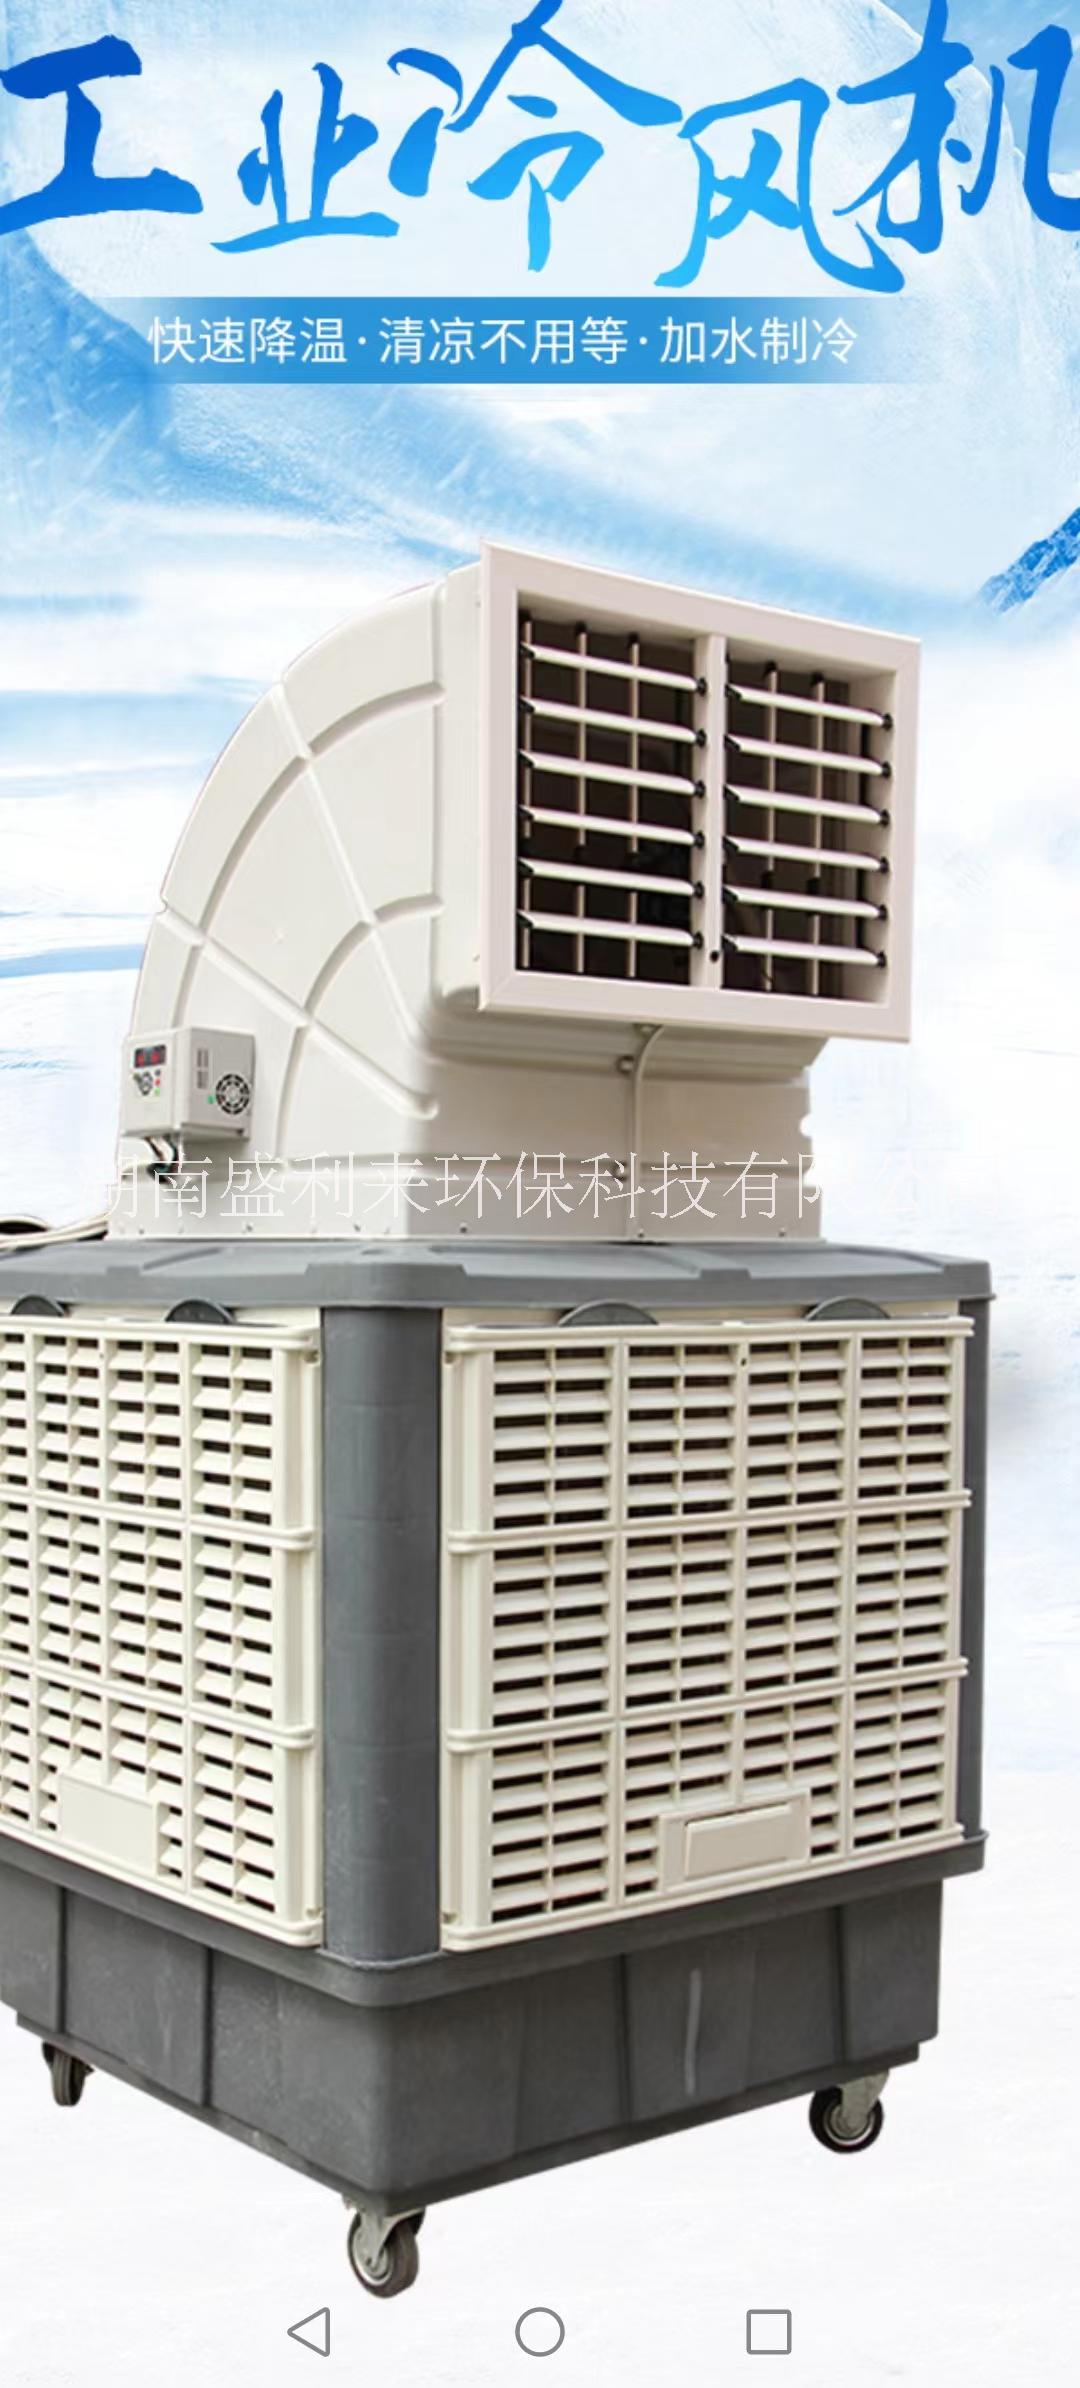 长沙株洲移动式环保空调/蒸发式水冷空调